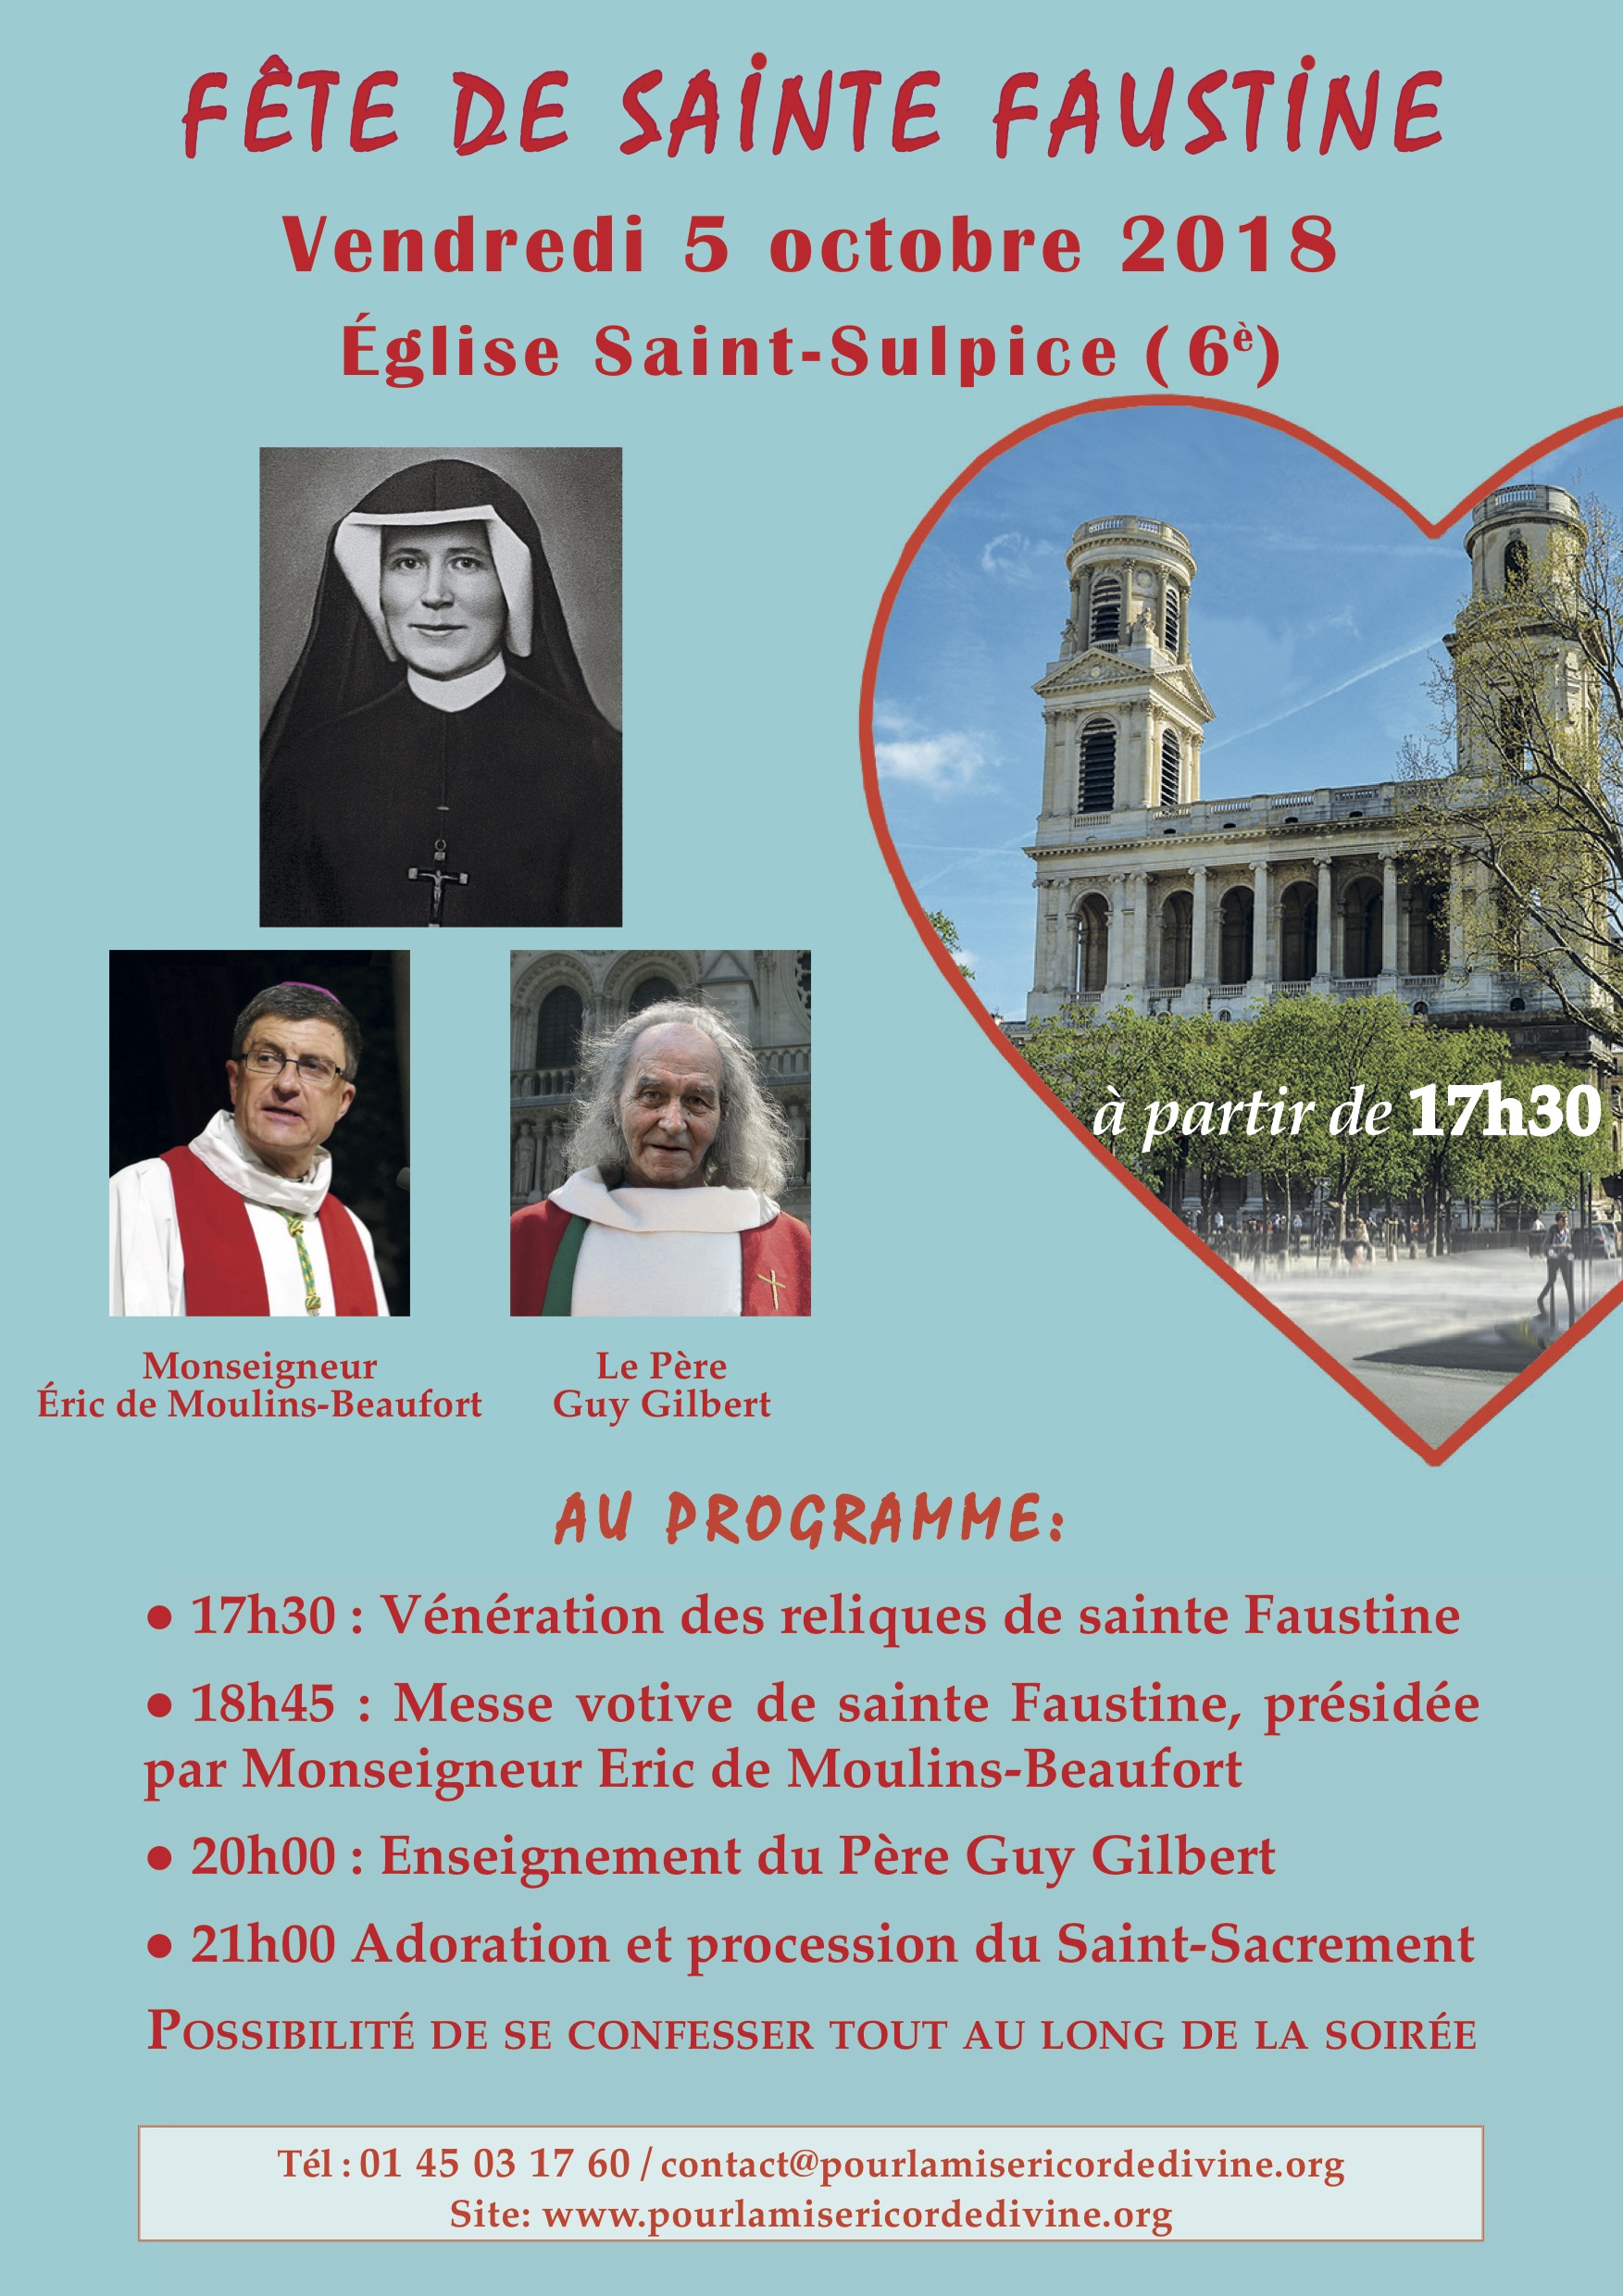 Grande célébration à l’occasion du 80e anniversaire du rappel à Dieu de sainte Faustine le 5 octobre 2018 à Paris